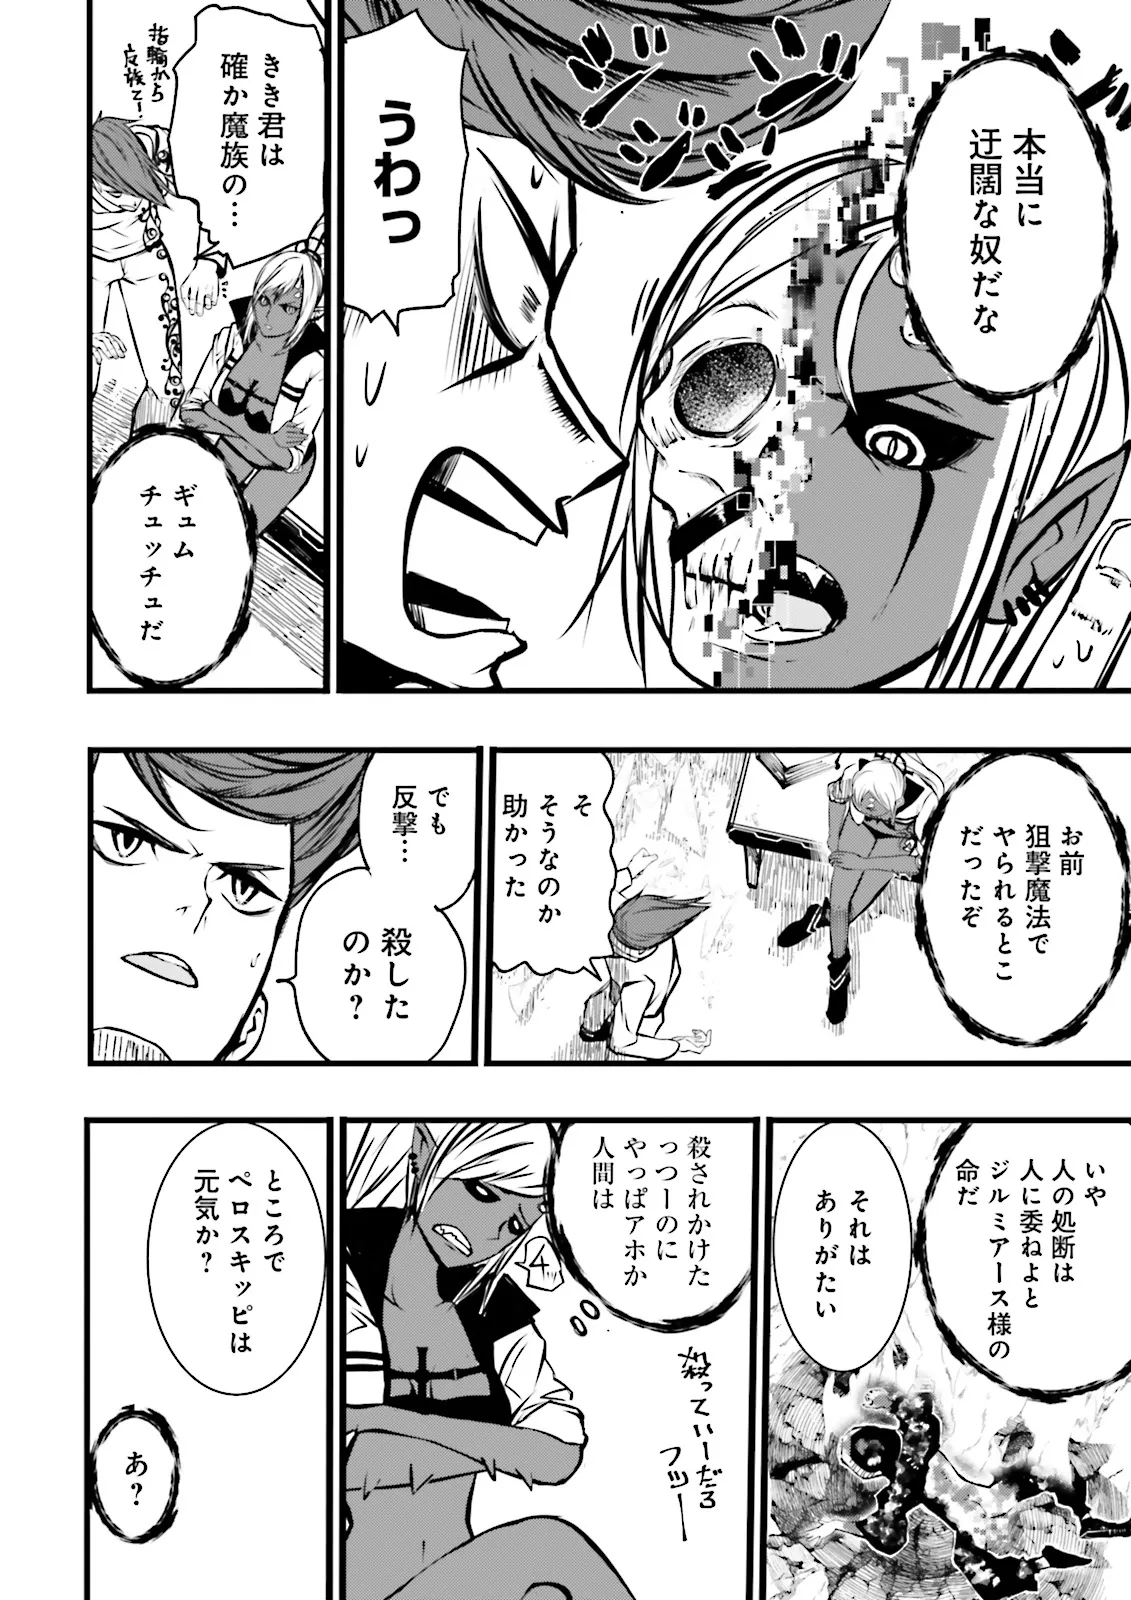 Sukiru Ga Nakereba Level wo Ageru ~ 99 Ga Kansuto No Sekai De Reberu 800 Man Kara Sutato ~ - Chapter 39.3 - Page 2